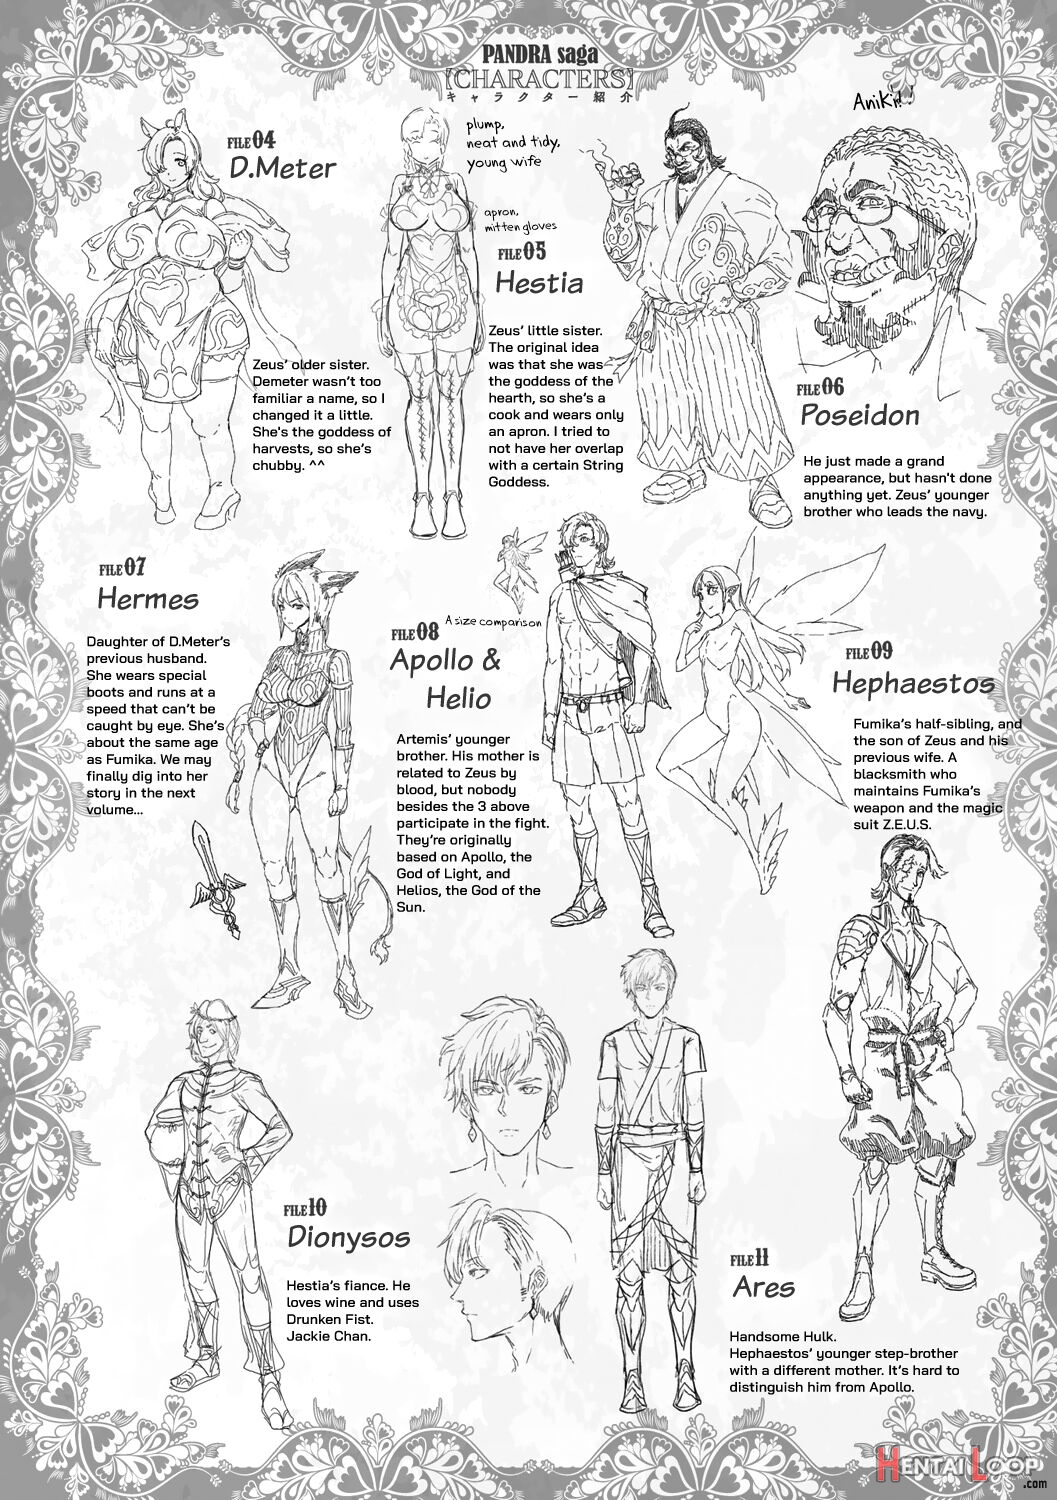 Raikou Shinki Igis Magia -pandra Saga 3rd Ignition- page 219